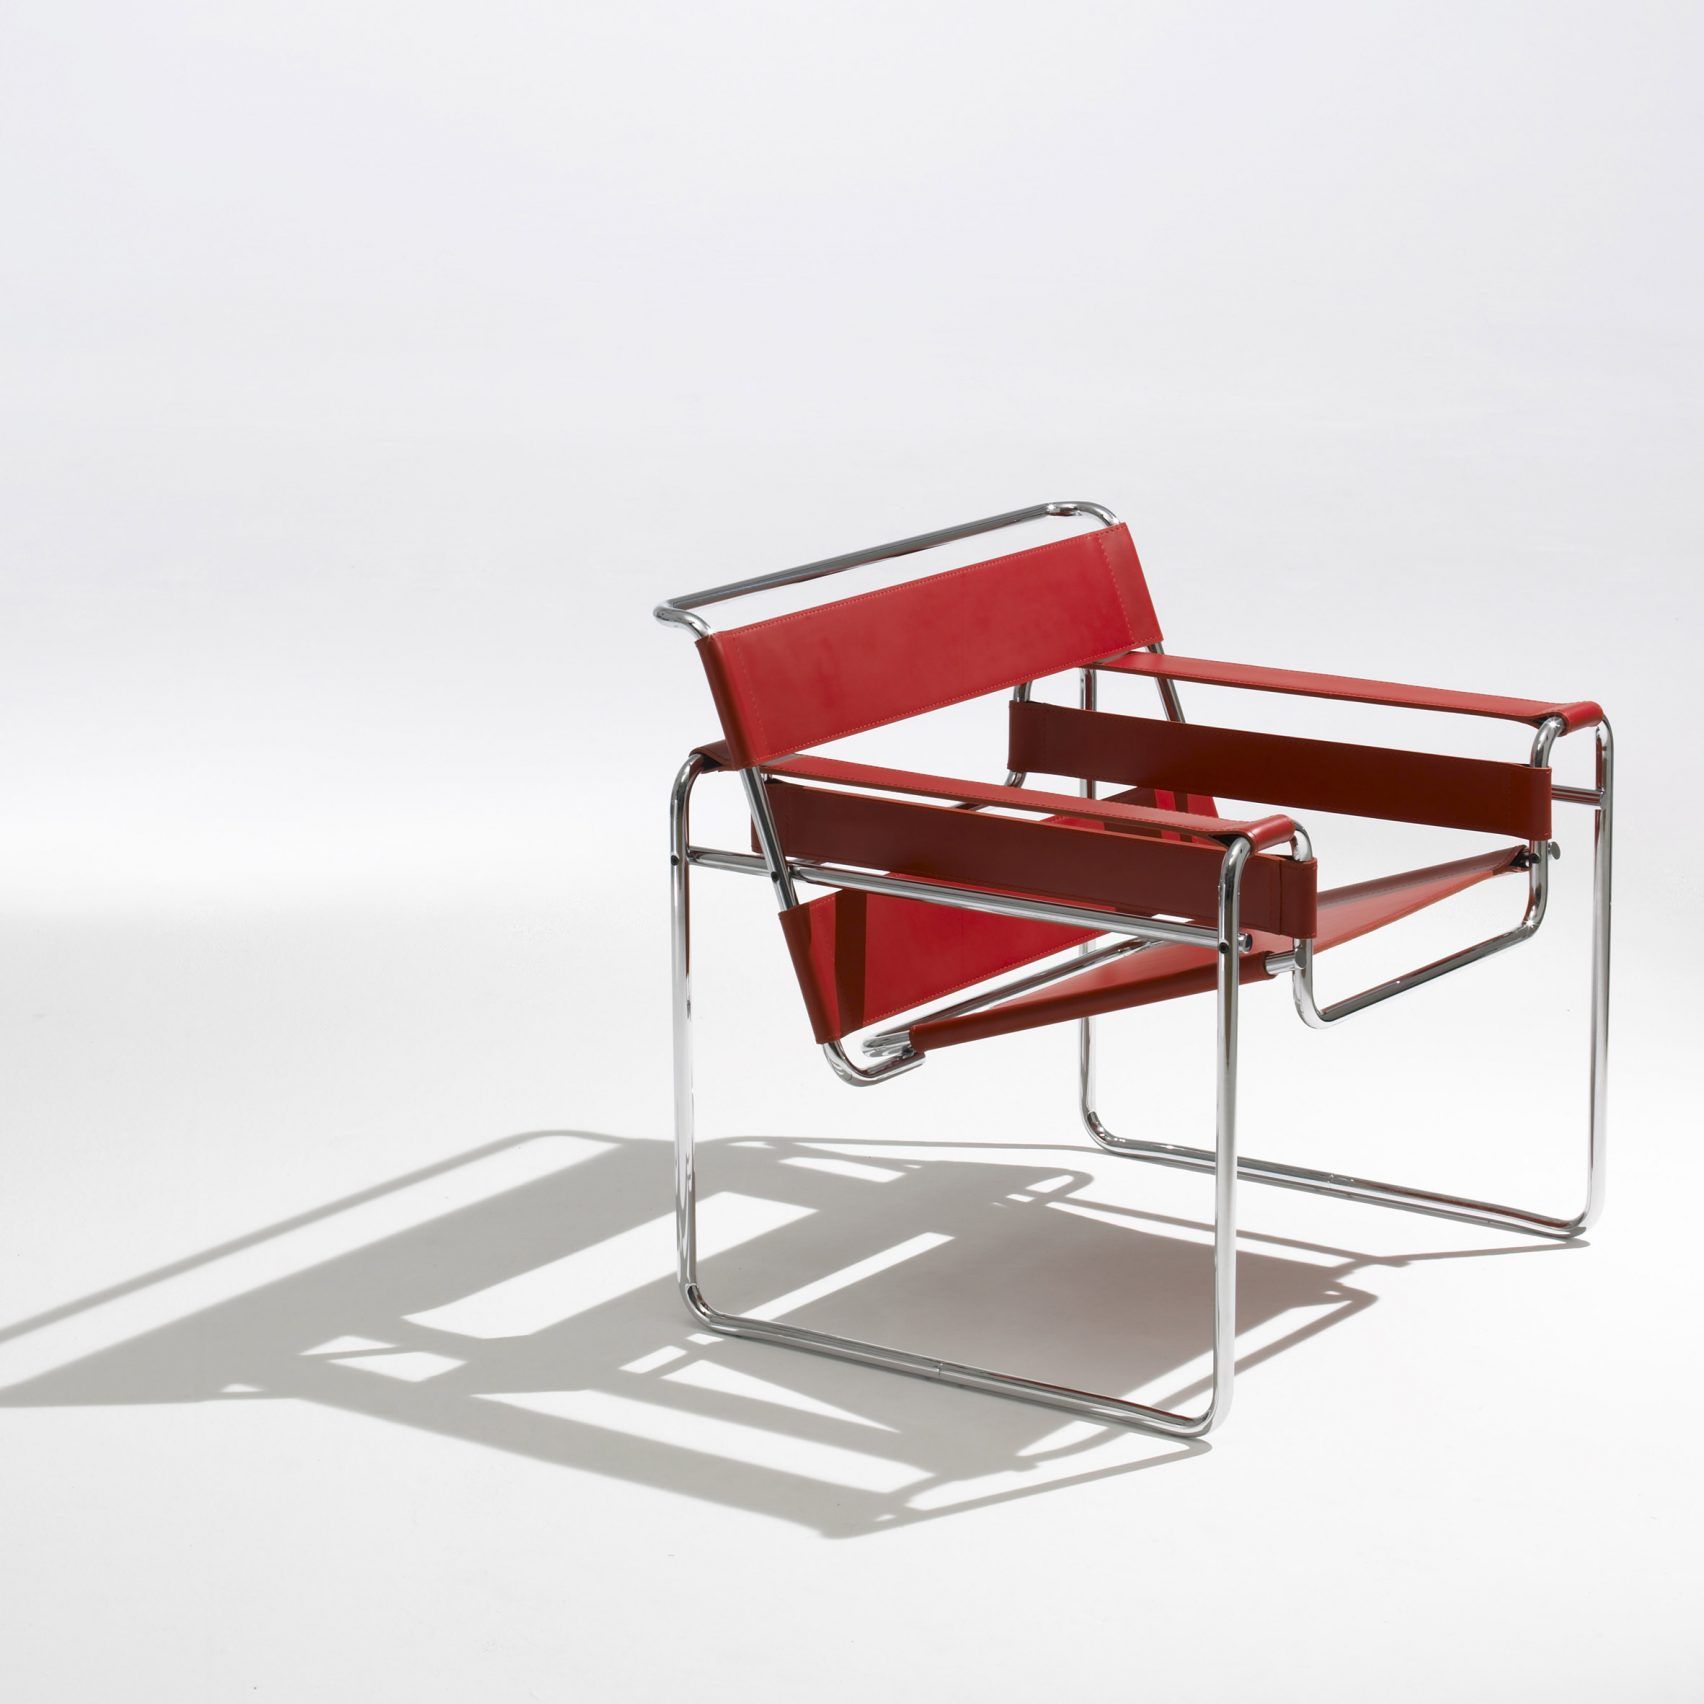 3 Furnitur Paling Ikonik dari Bauhaus, Desainnya Keren-keren!